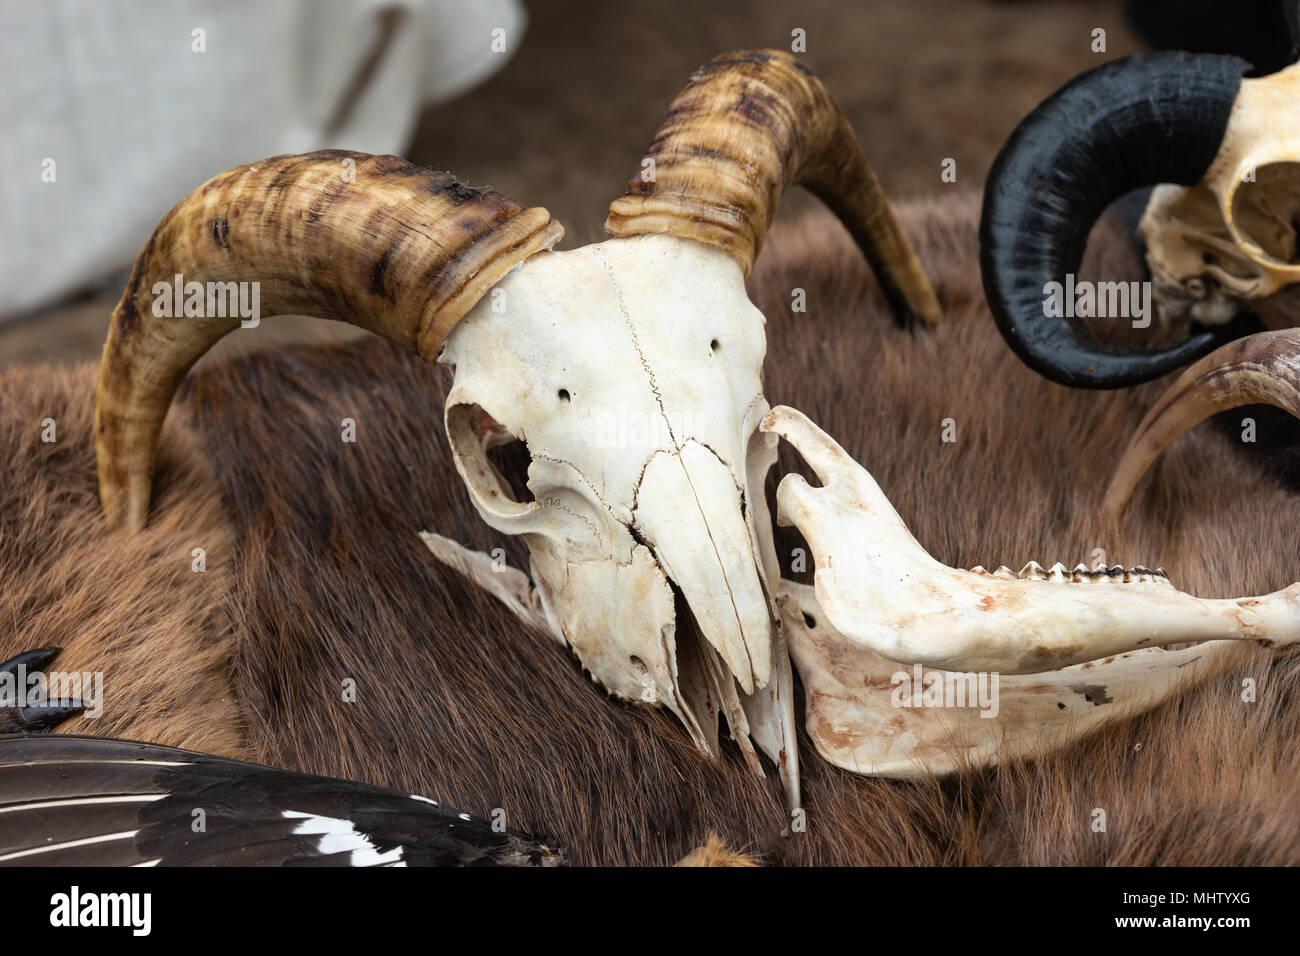 Ziege Schädel mit großen Hörnern legt auf ein Tier Verstecken von brauner Farbe. Mittelalterliche Zubehör Stockfoto